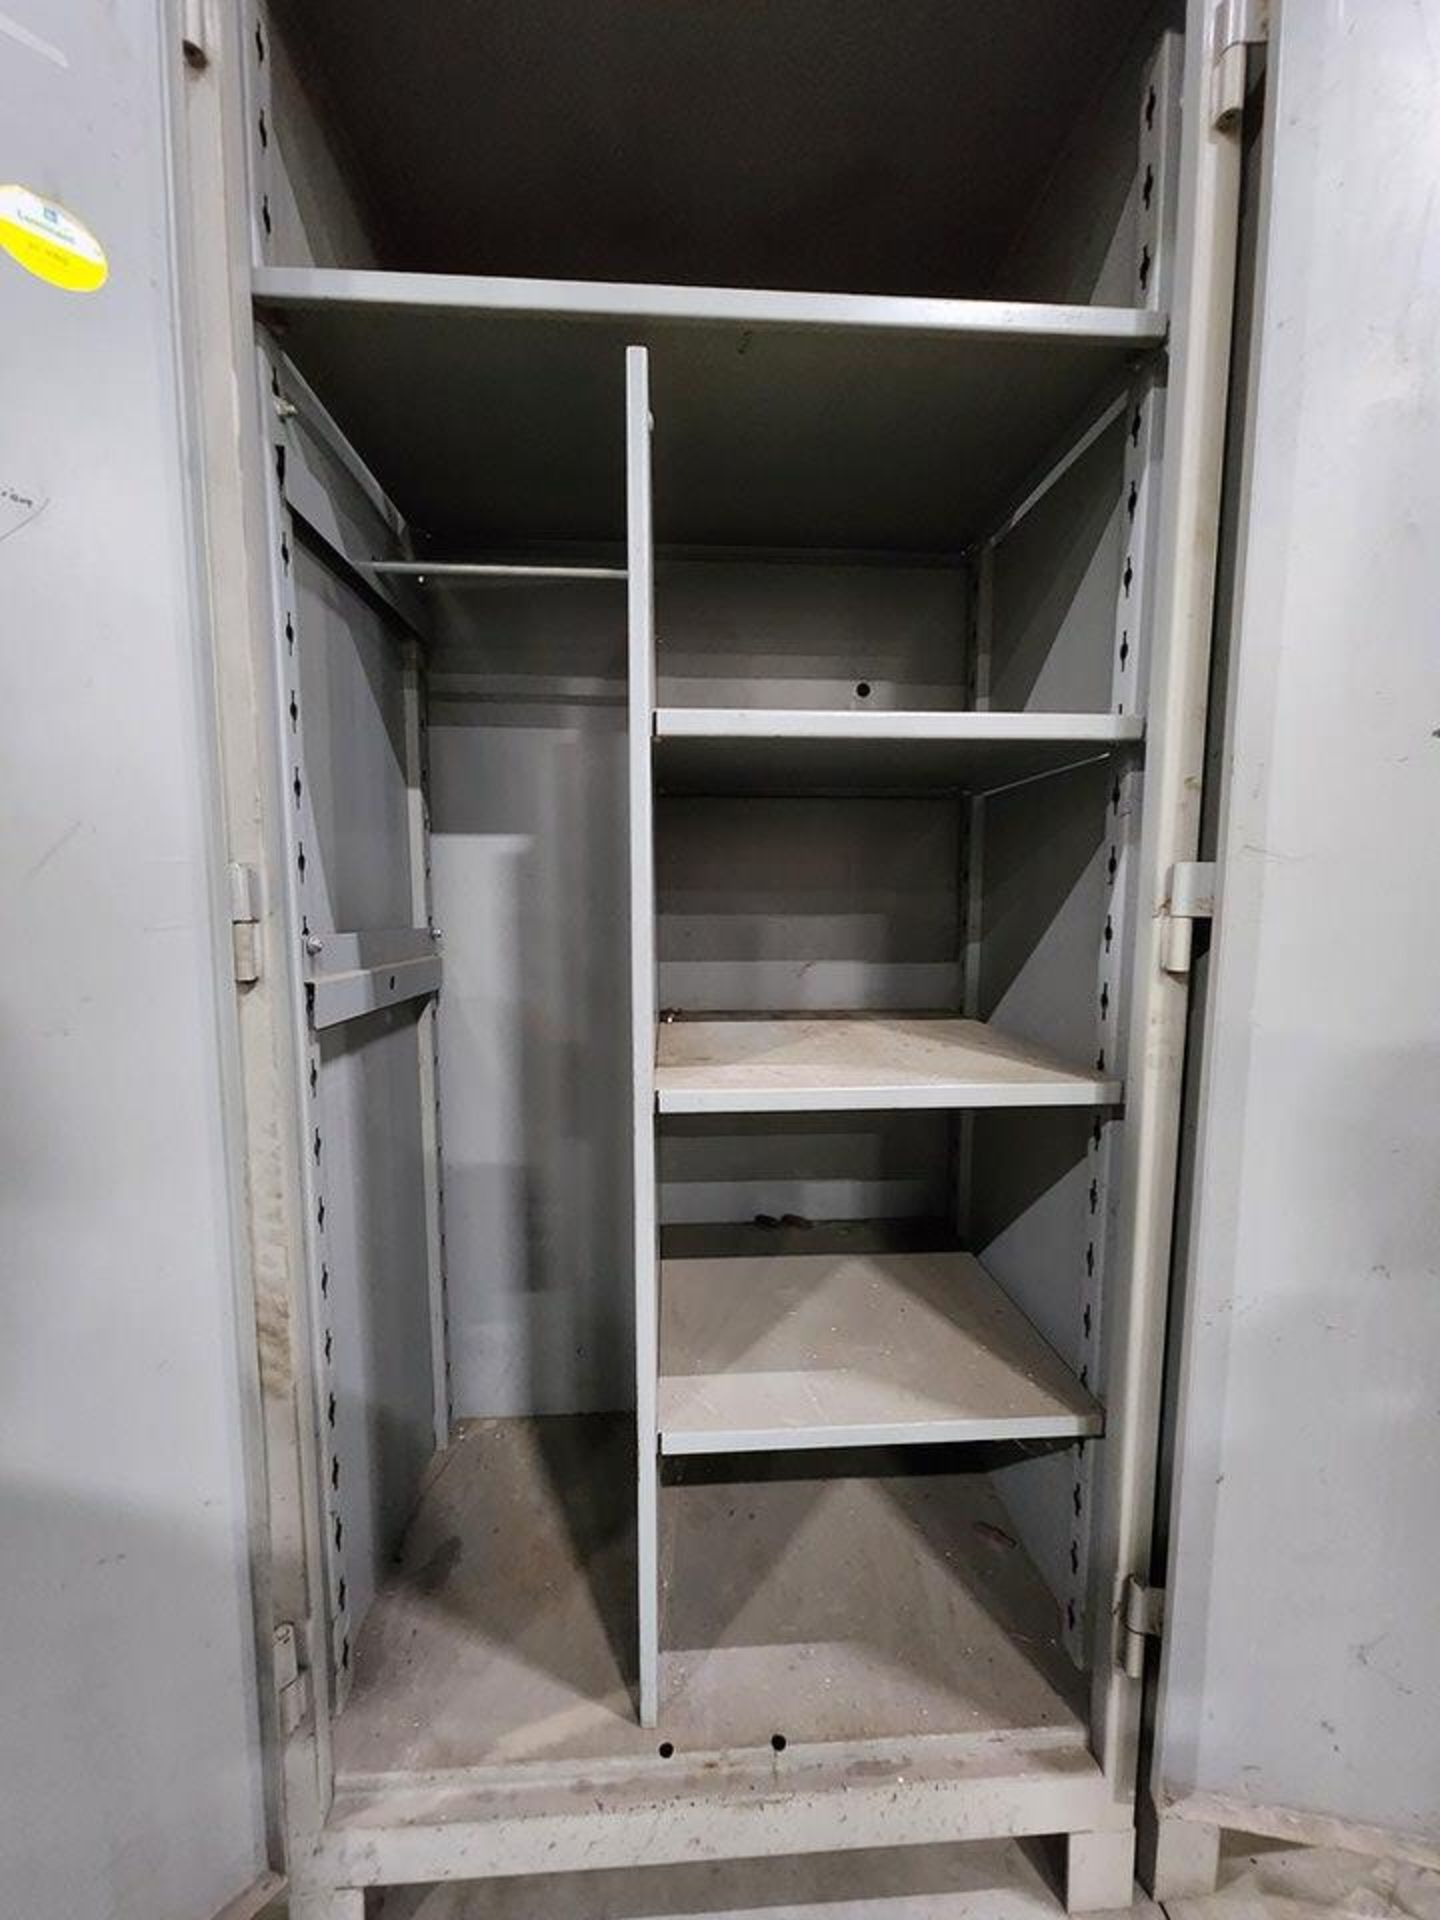 Lyon Metal 2-Door Material Cabinets 36" x 24" x 82" - Image 4 of 4